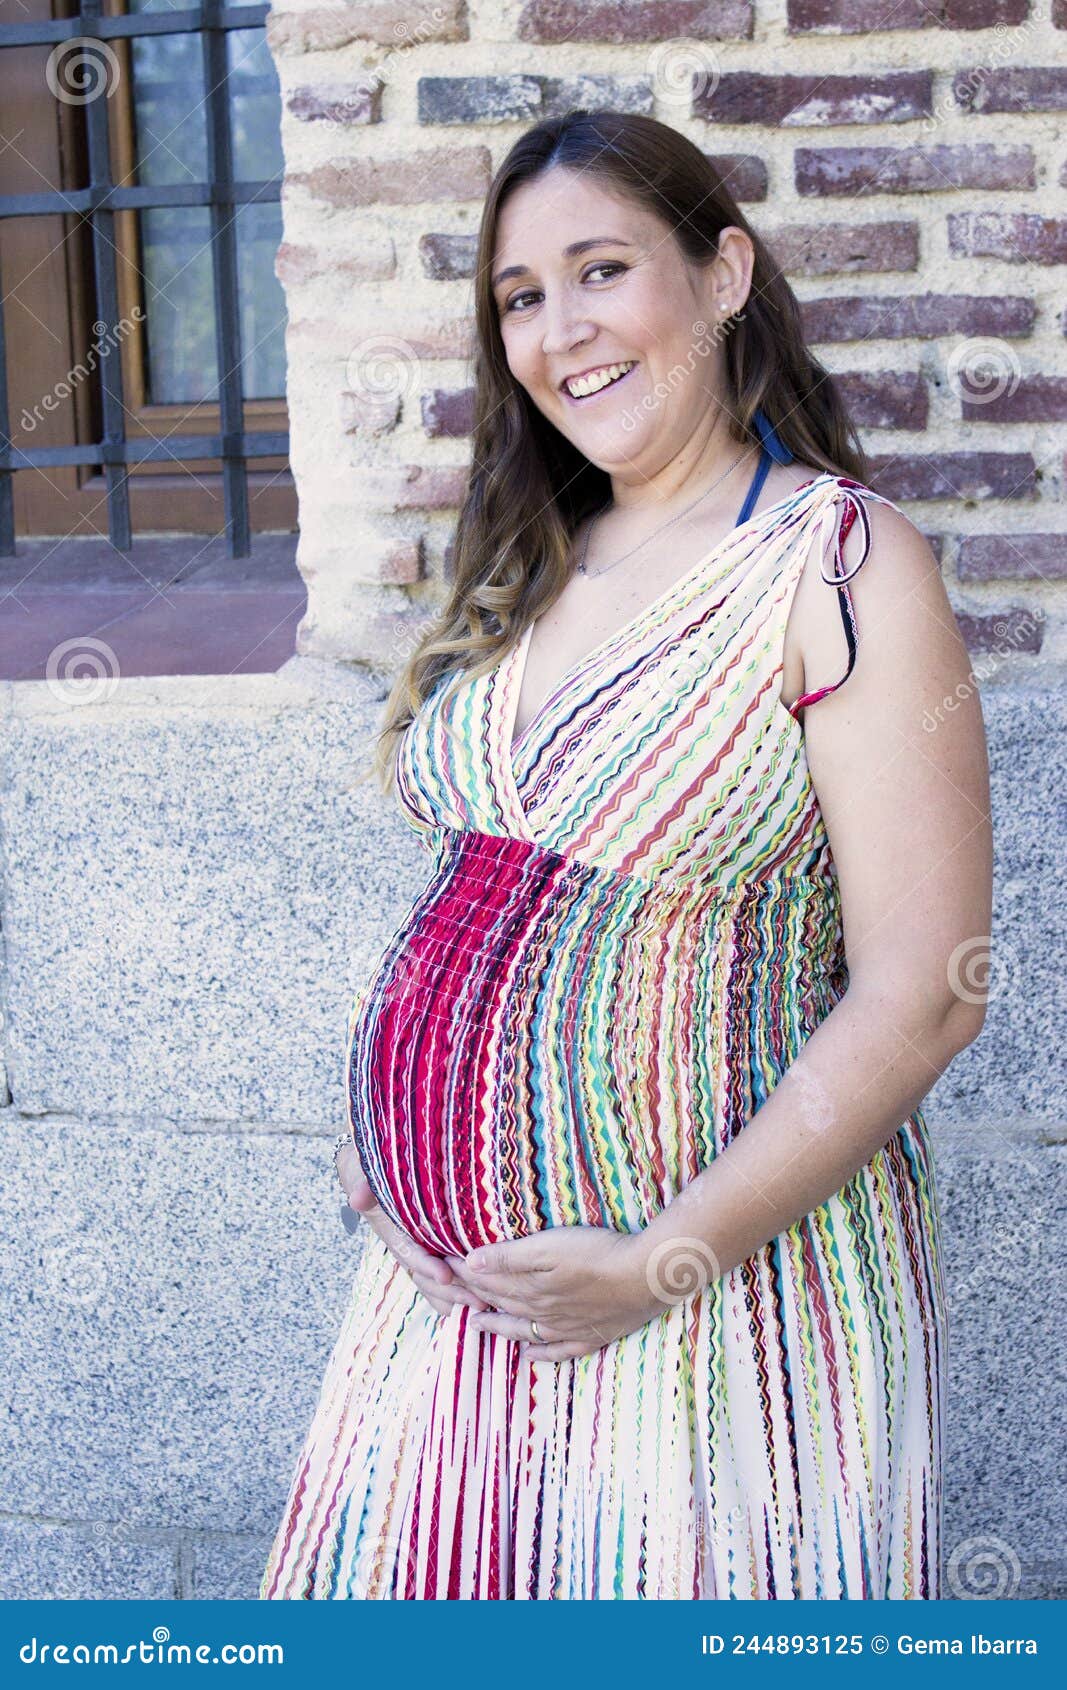 Mujer Embarazada De Siete Meses Al Aire Libre Con Vestido De Multicolores Imagen de archivo - Imagen lifestyle, sano: 244893125